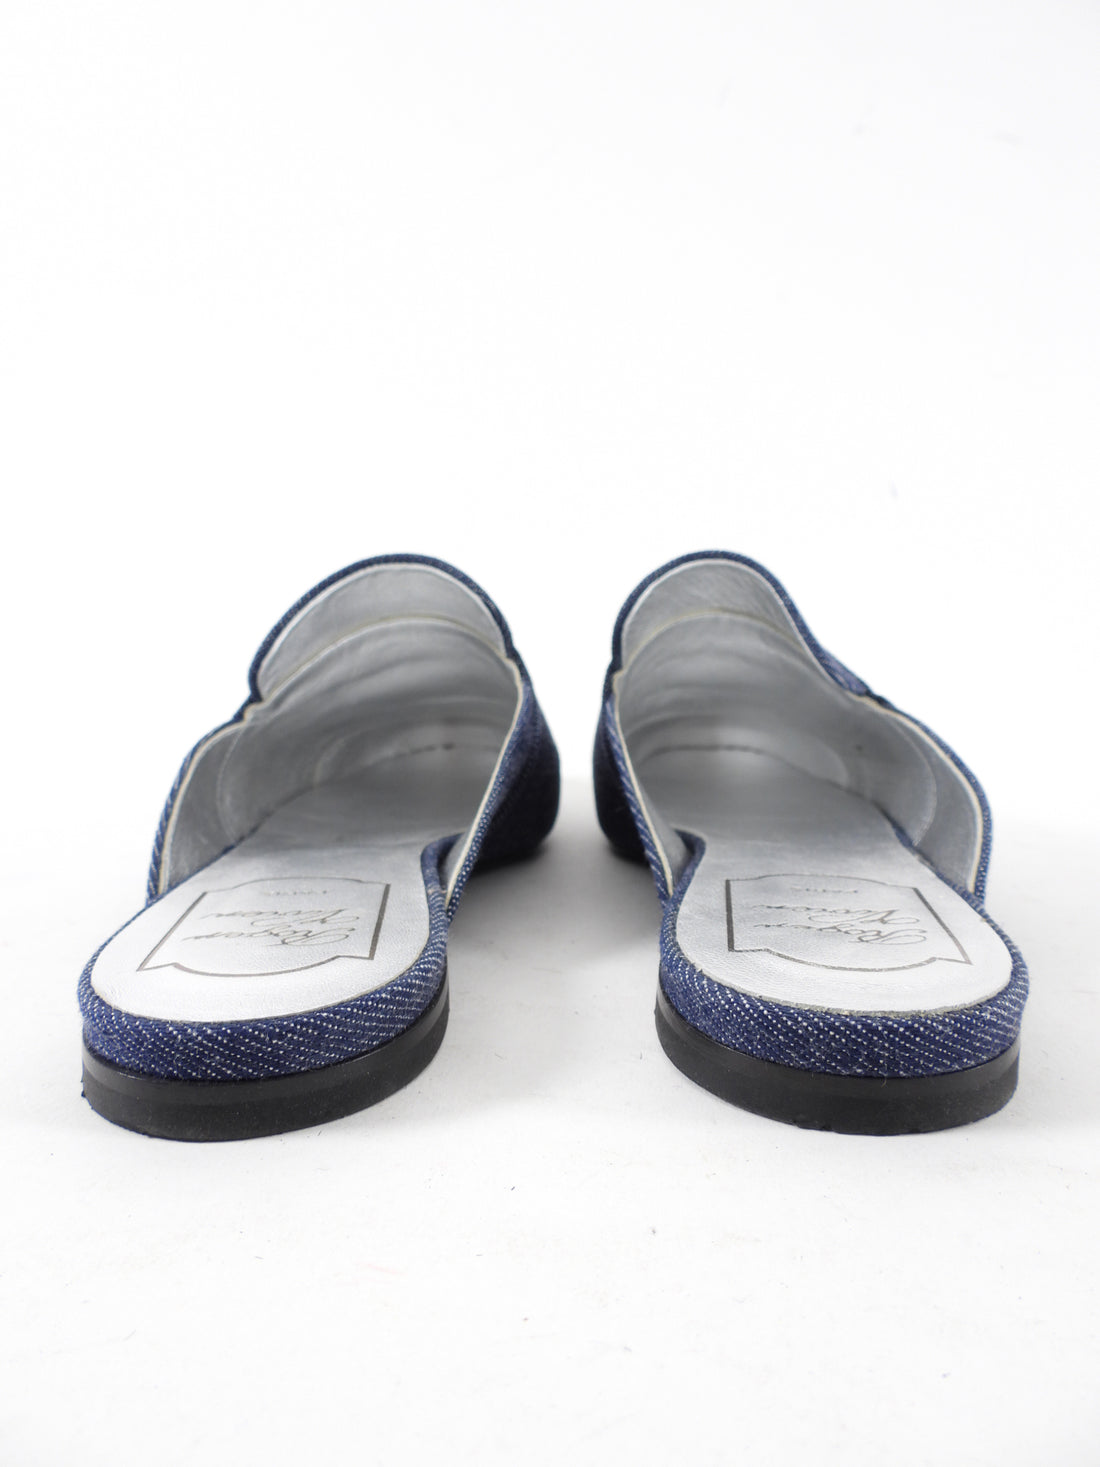 Roger Vivier Blue Denim Sequin Slip on Flat Slides - 38 / 7.5